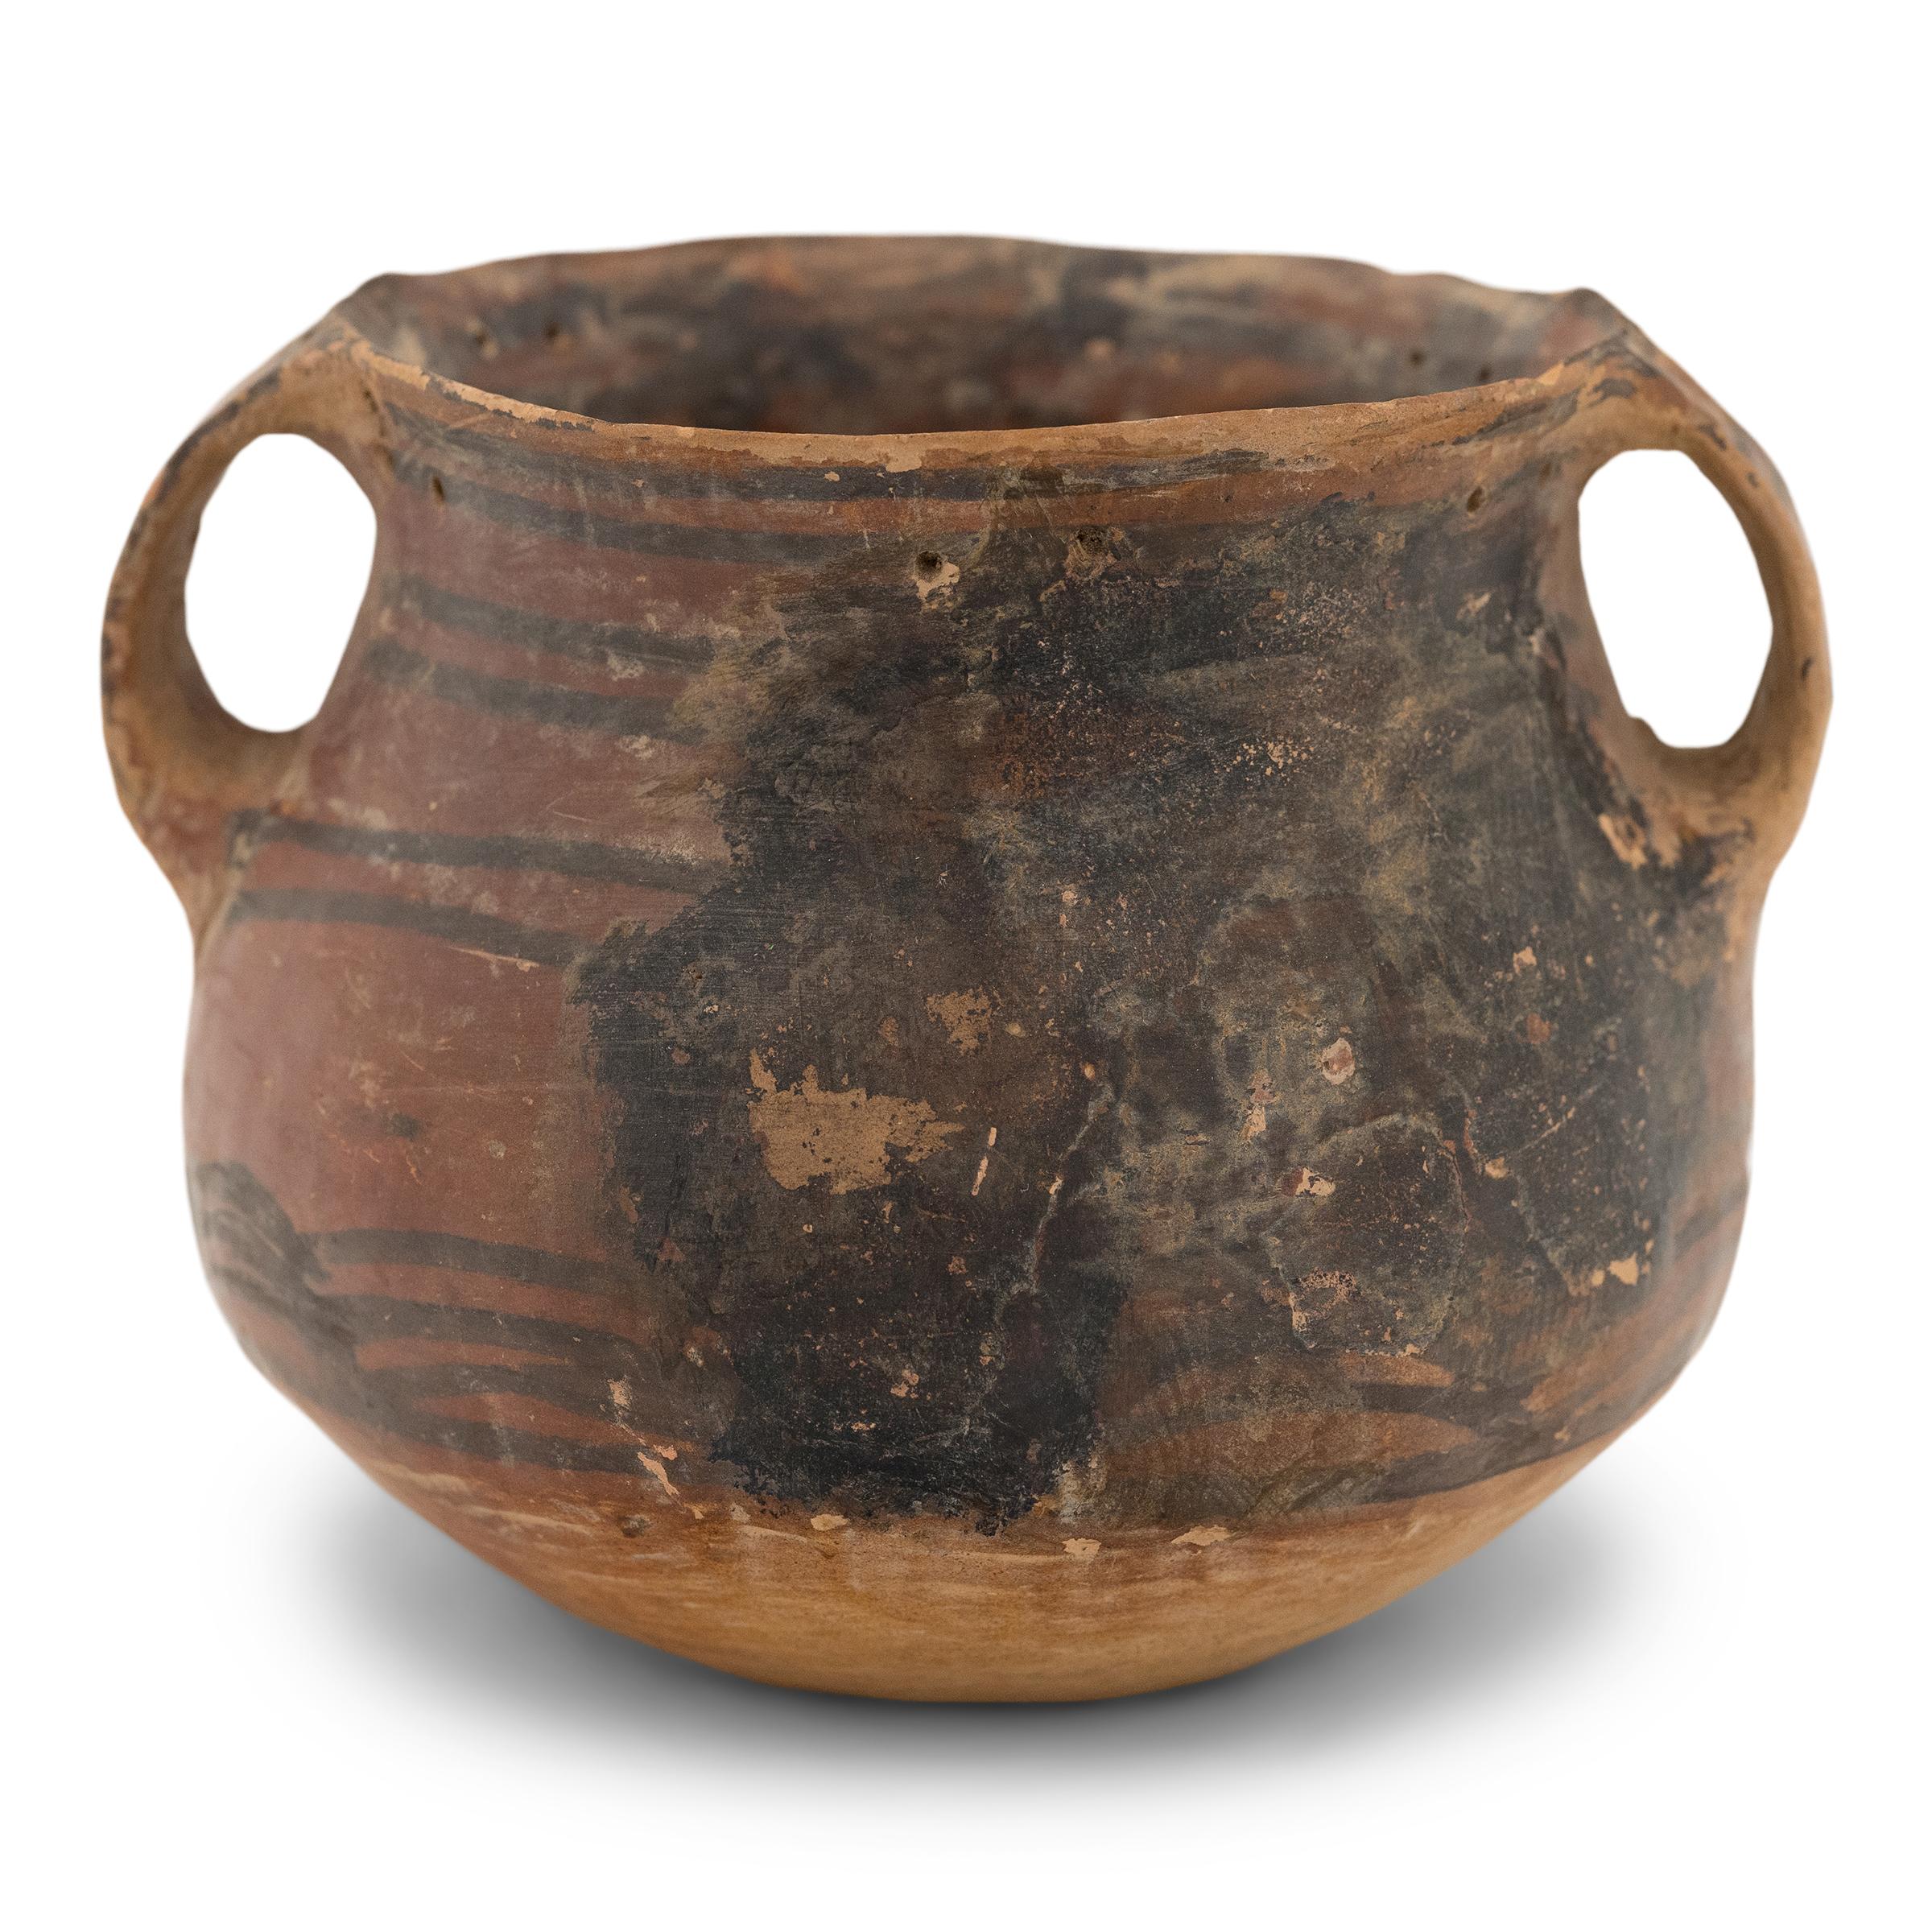 Cette petite jarre en céramique est considérée comme un exemple tardif de poterie chinoise néolithique en grès rouge de la culture Yangshao. Bien que son âge exact soit inconnu, la jarre a probablement été créée vers 5000-3000 A.C.E.. Enroulés et